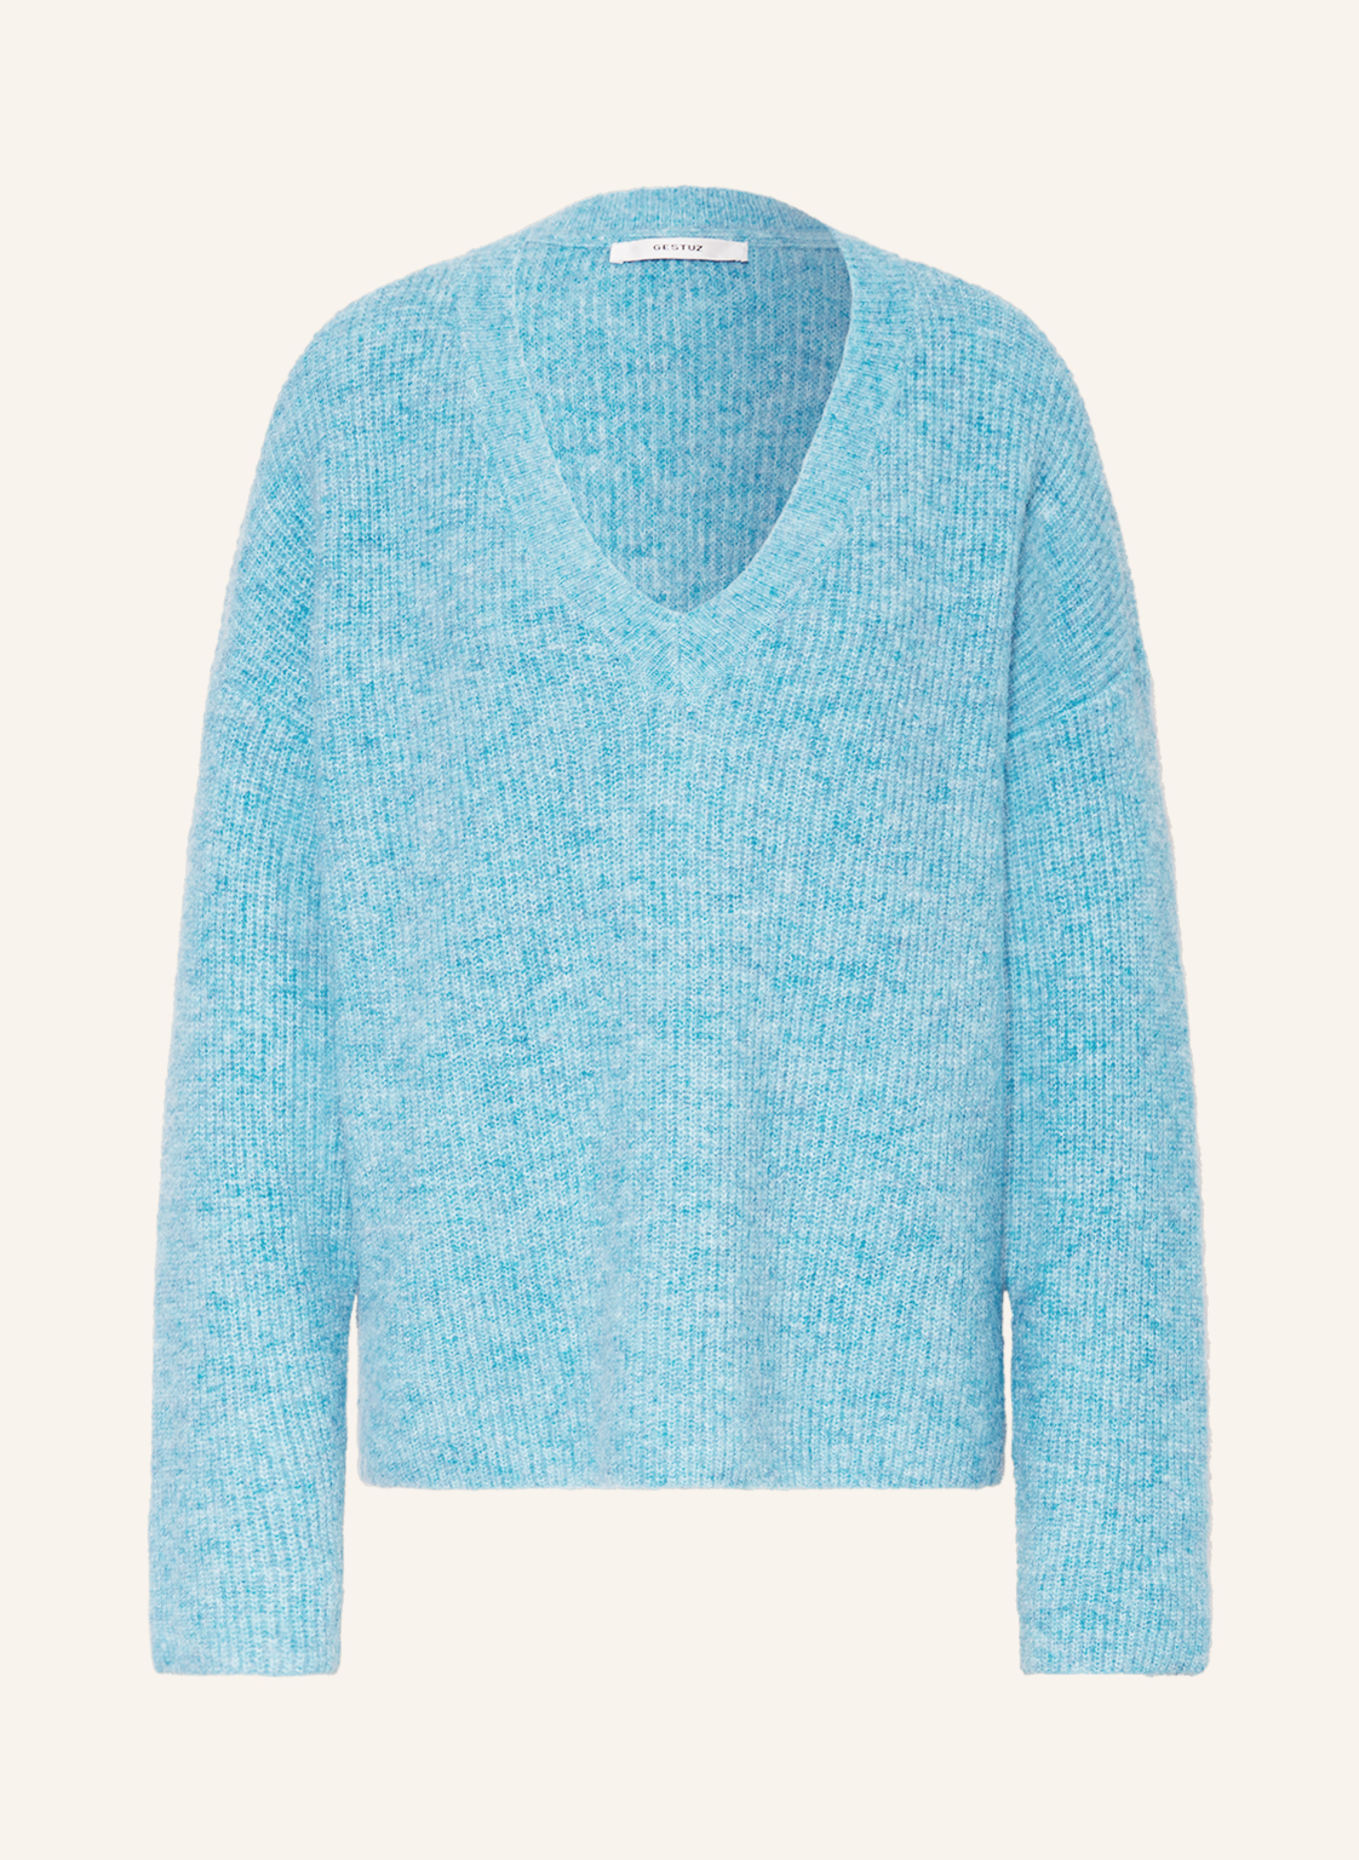 GESTUZ Sweater ALPHAGZ with alpaca, Color: TURQUOISE (Image 1)